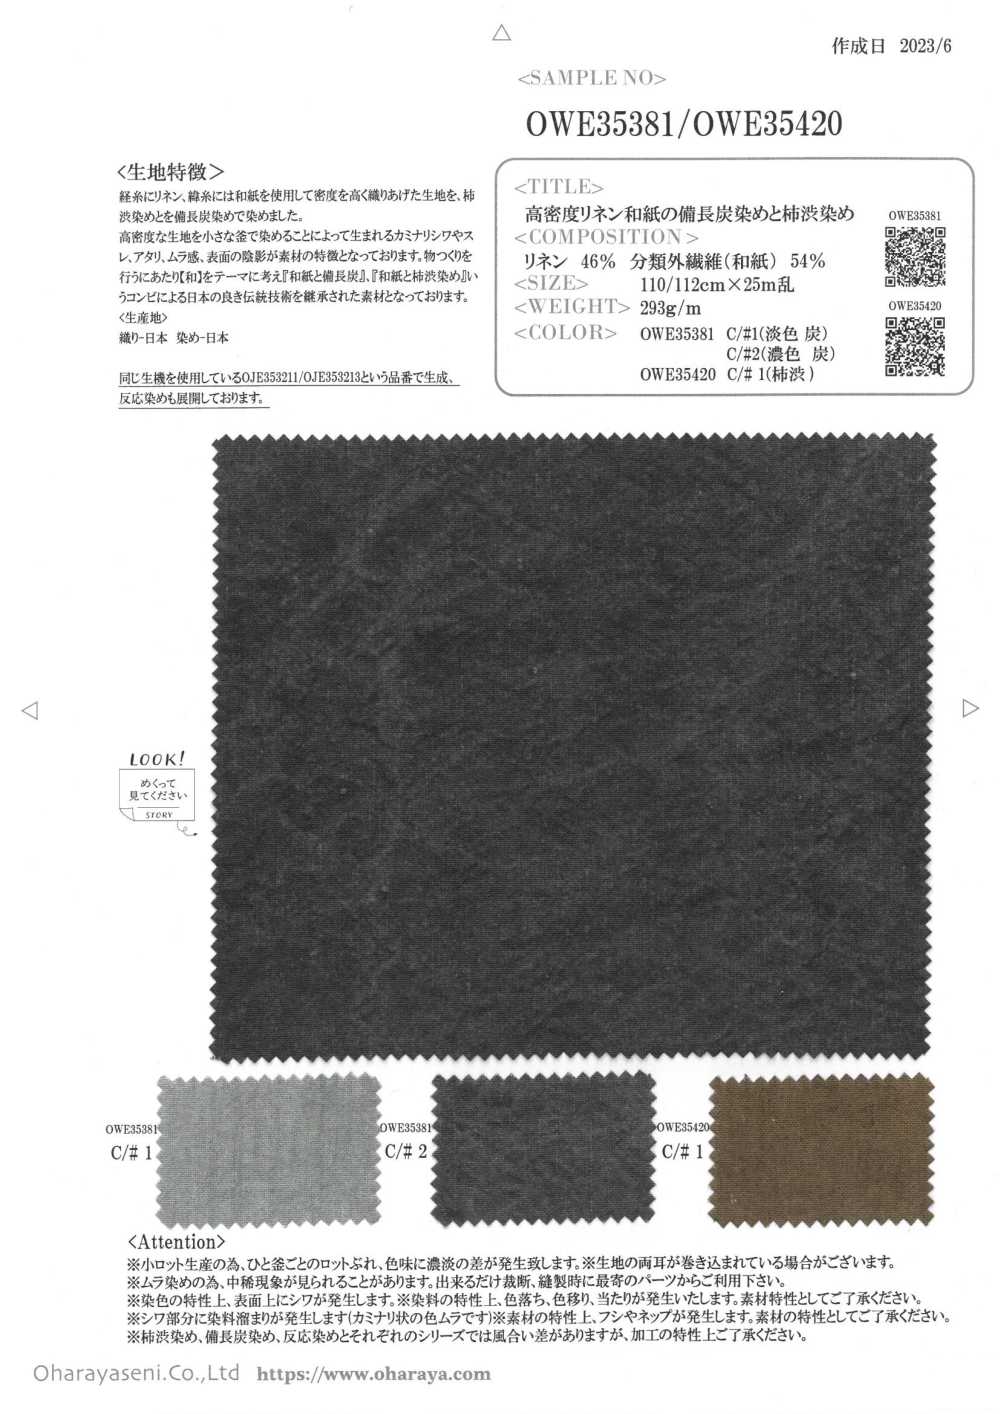 OWE35420 Nhuộm Tang Màu Hồng Trên Vải Lanh Mật độ Cao Giấy Washi Oharayaseni